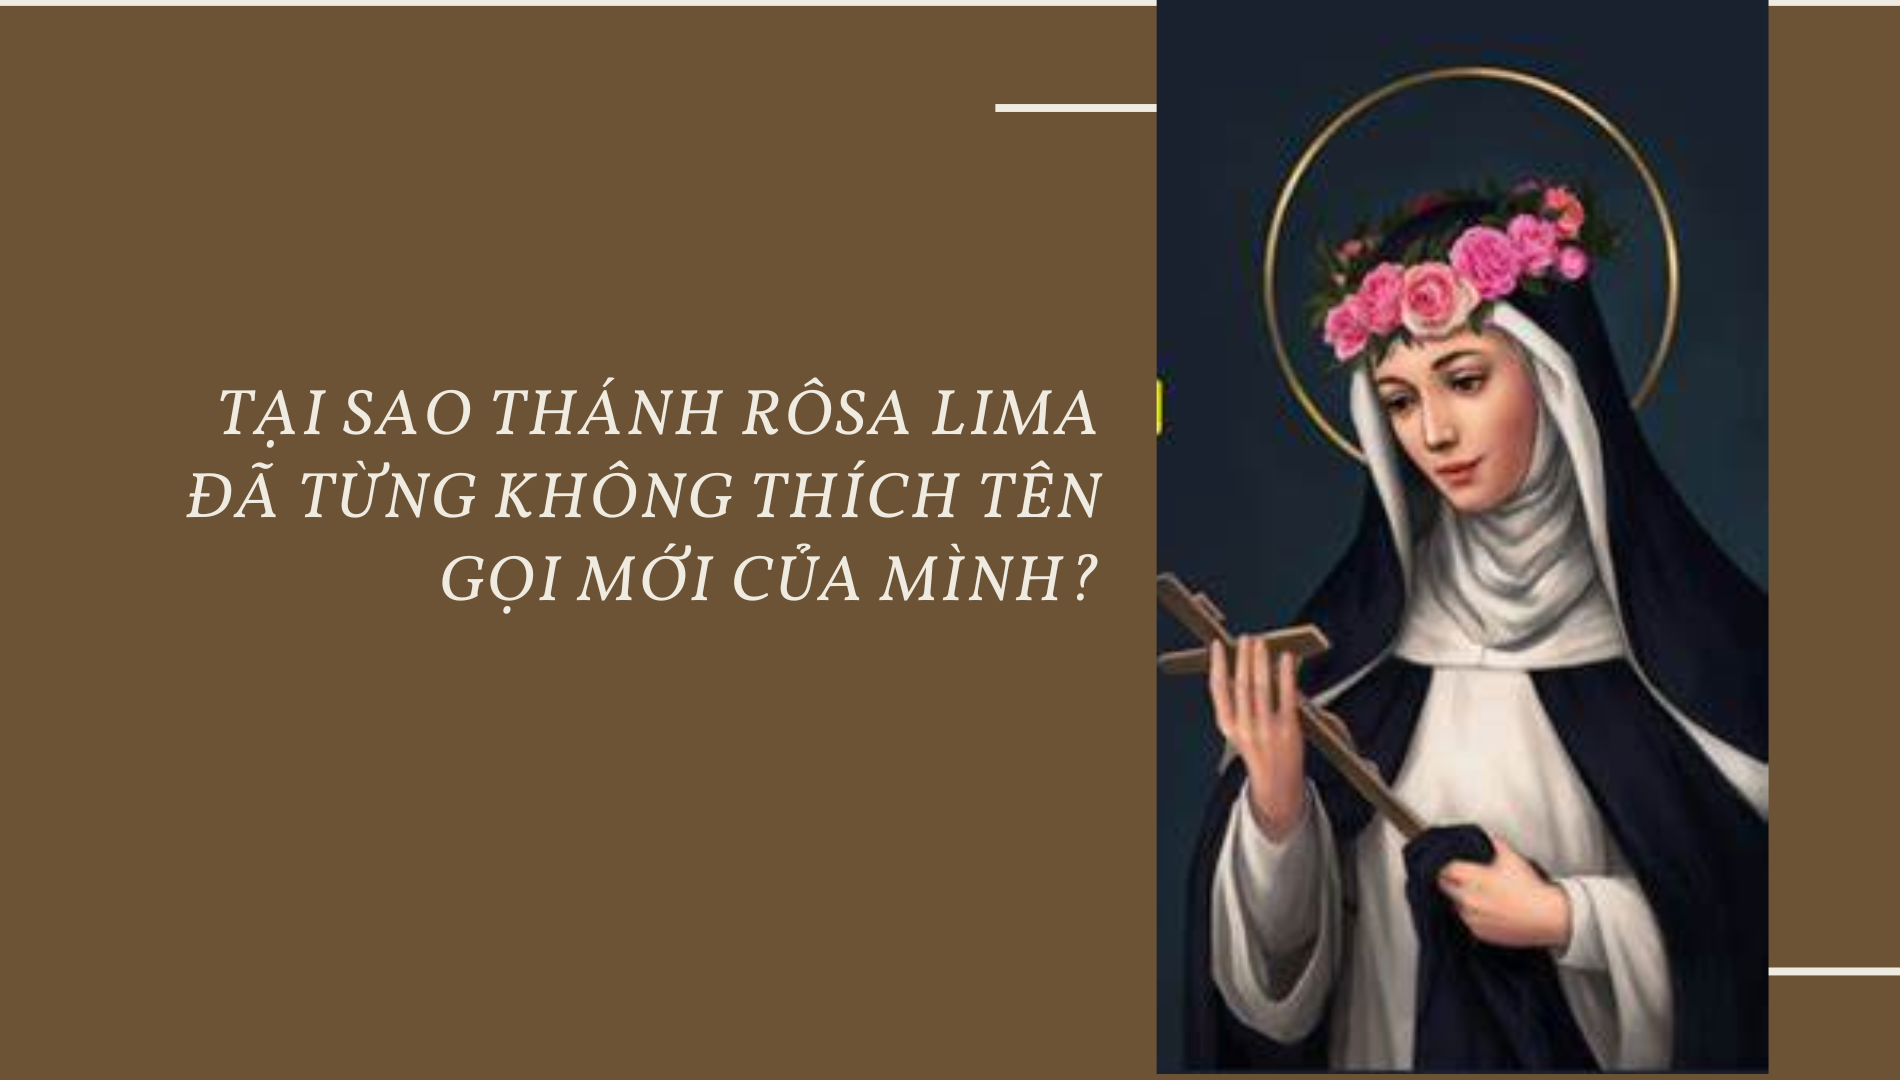 Tại sao Thánh Rôsa Lima đã từng không thích tên gọi mới của mình?